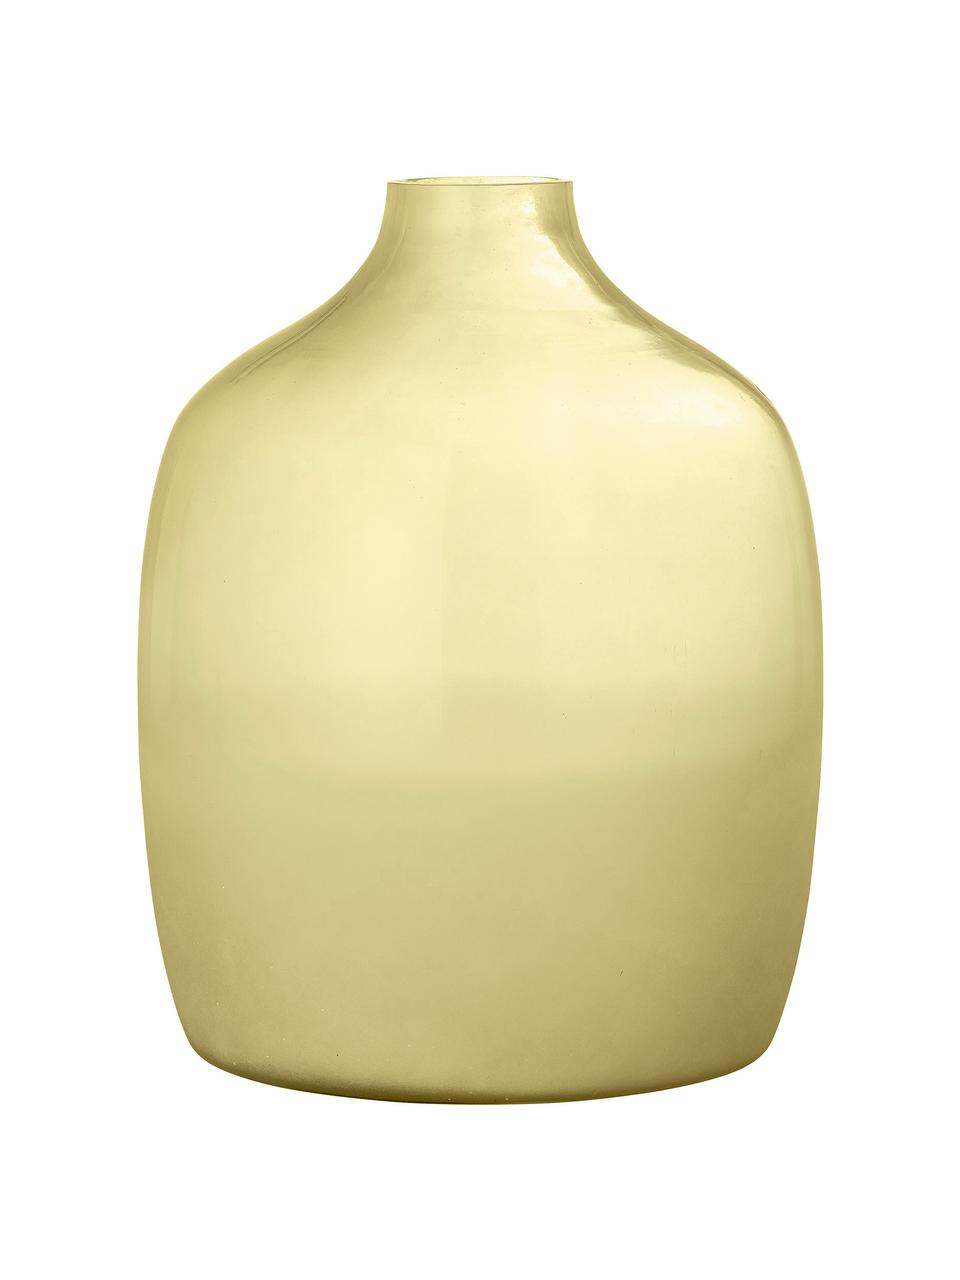 Glas-Vase Idima in Gelb, Glas, Gelb, Transparent, Ø 24 x H 30 cm